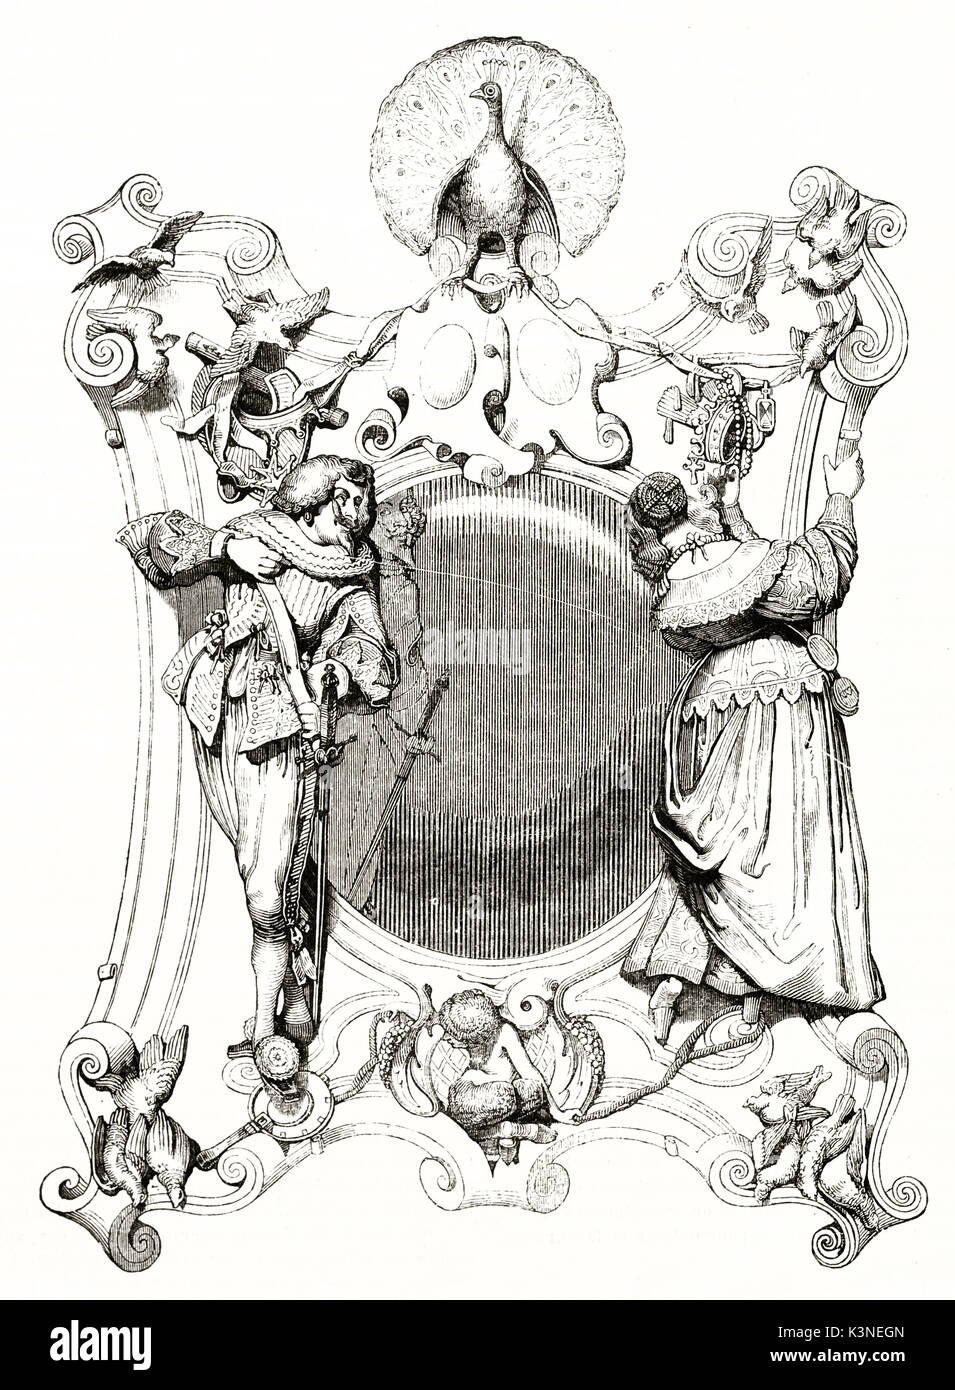 Alte graviert Reproduktion des miroir de la Vanitischen (Vanity Mirror) Holz- Bildhauerei. Sehr detaillierte elegante Objekt. Nach Felicie de Faveau auf Magasin Pittoresque Paris 1839 veröffentlicht. Stockfoto